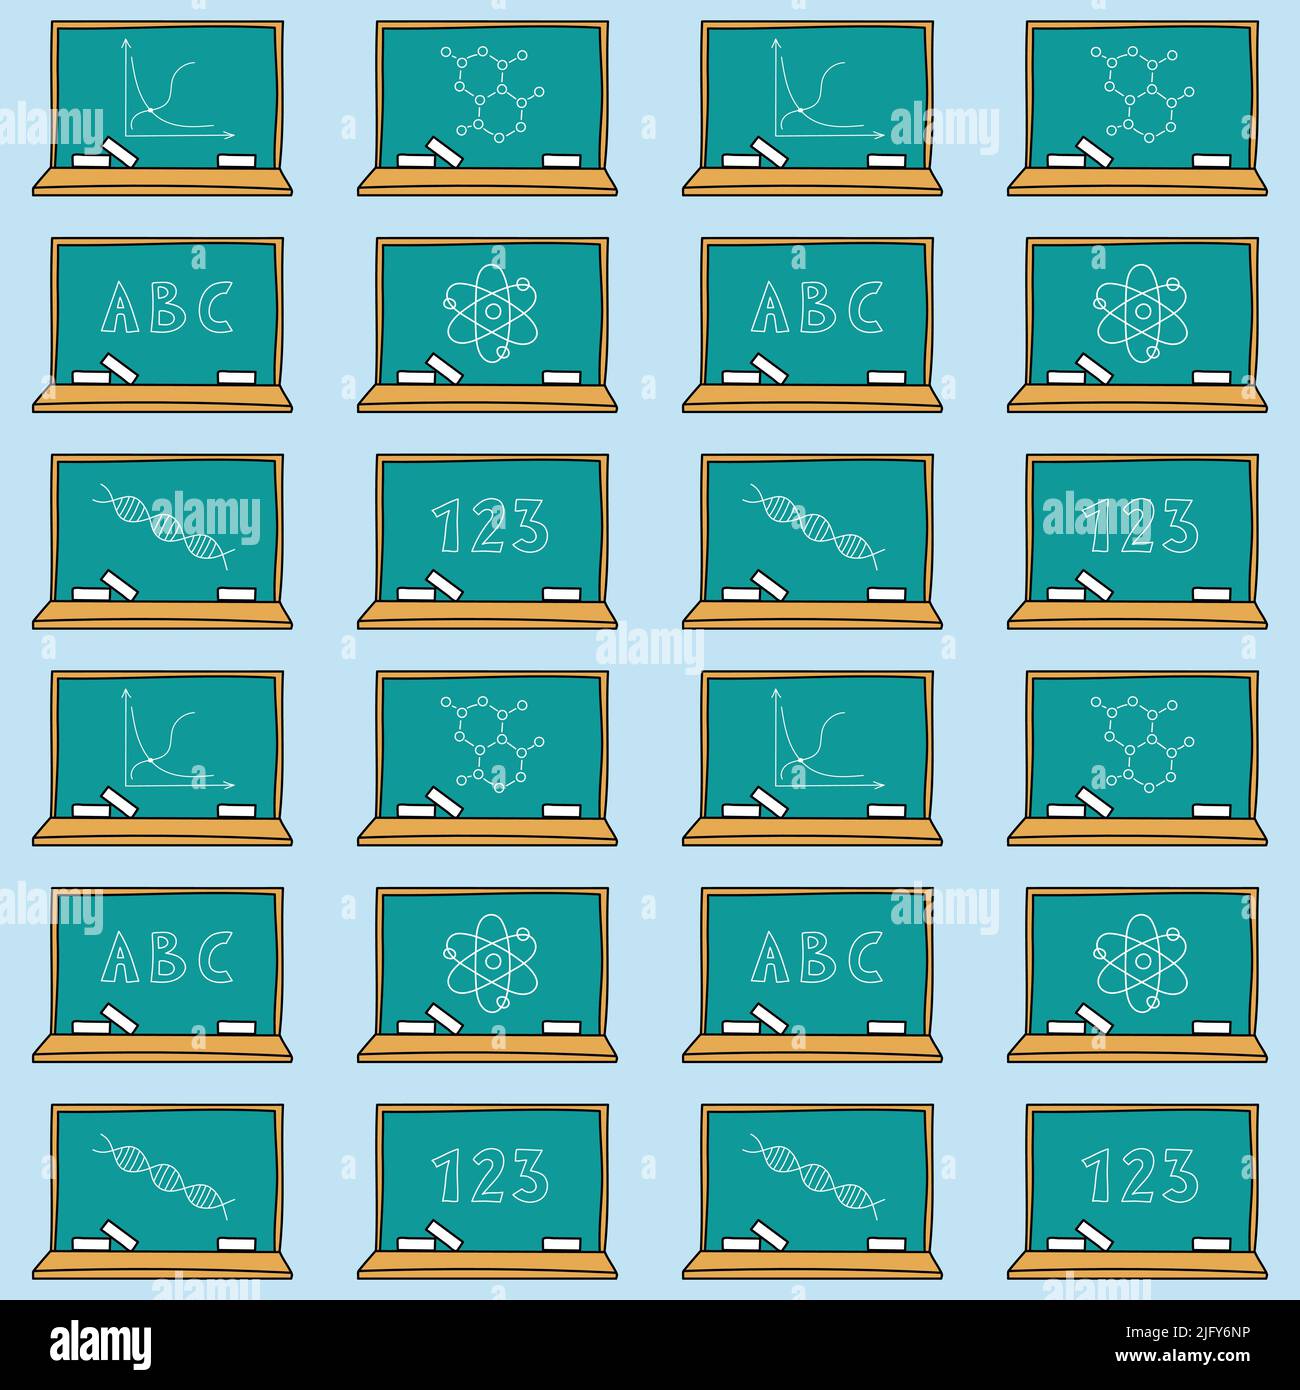 Modello di scuola di doodle. Tavola disegnata a mano con gesso e simboli scritti, lettere e numeri. Background perfetto per la scuola. Illustrazione vettoriale. Illustrazione Vettoriale